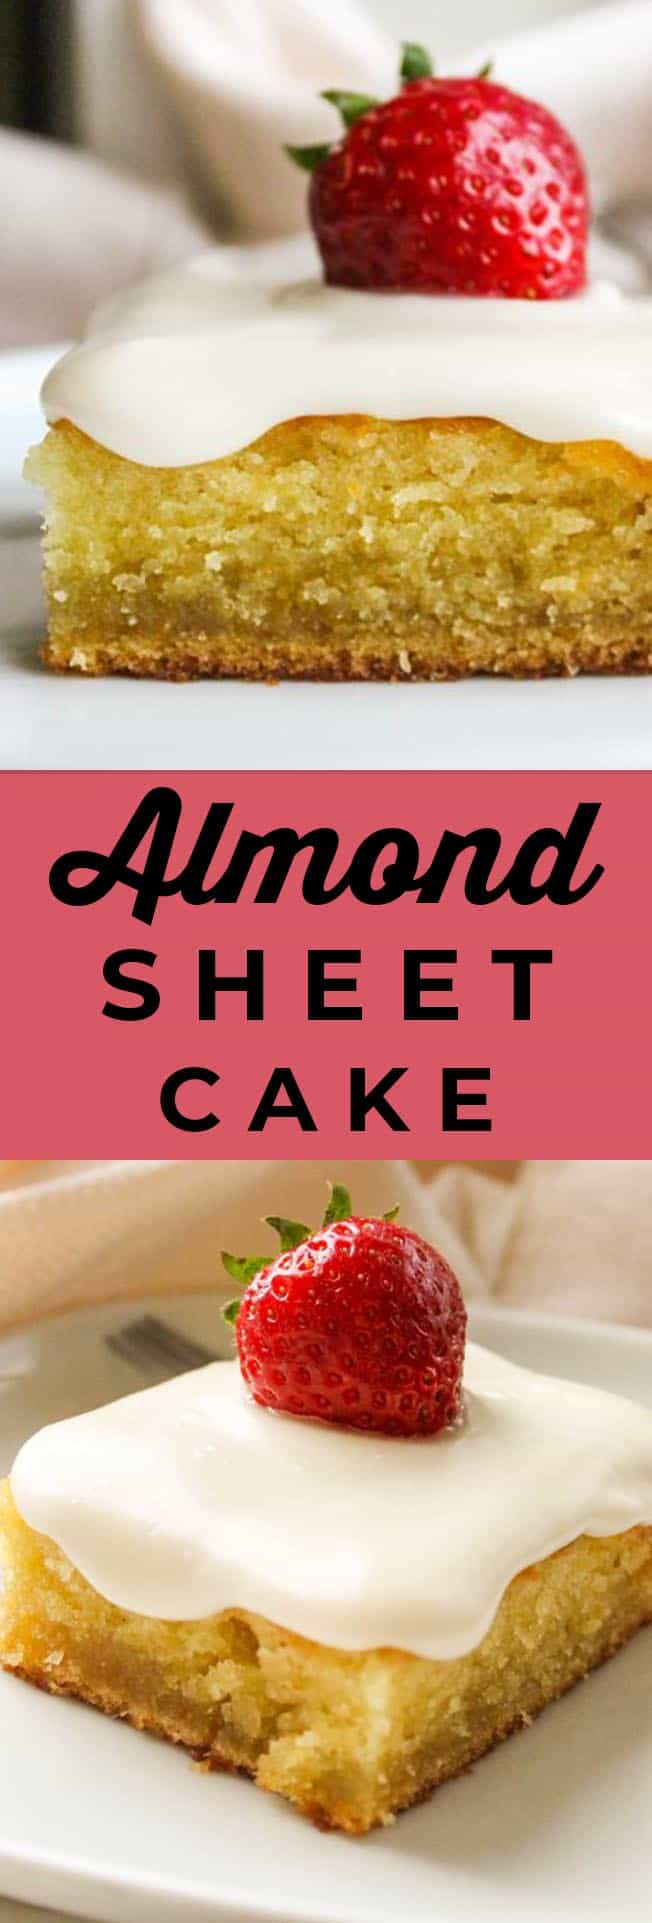 almond sheet cake recipe